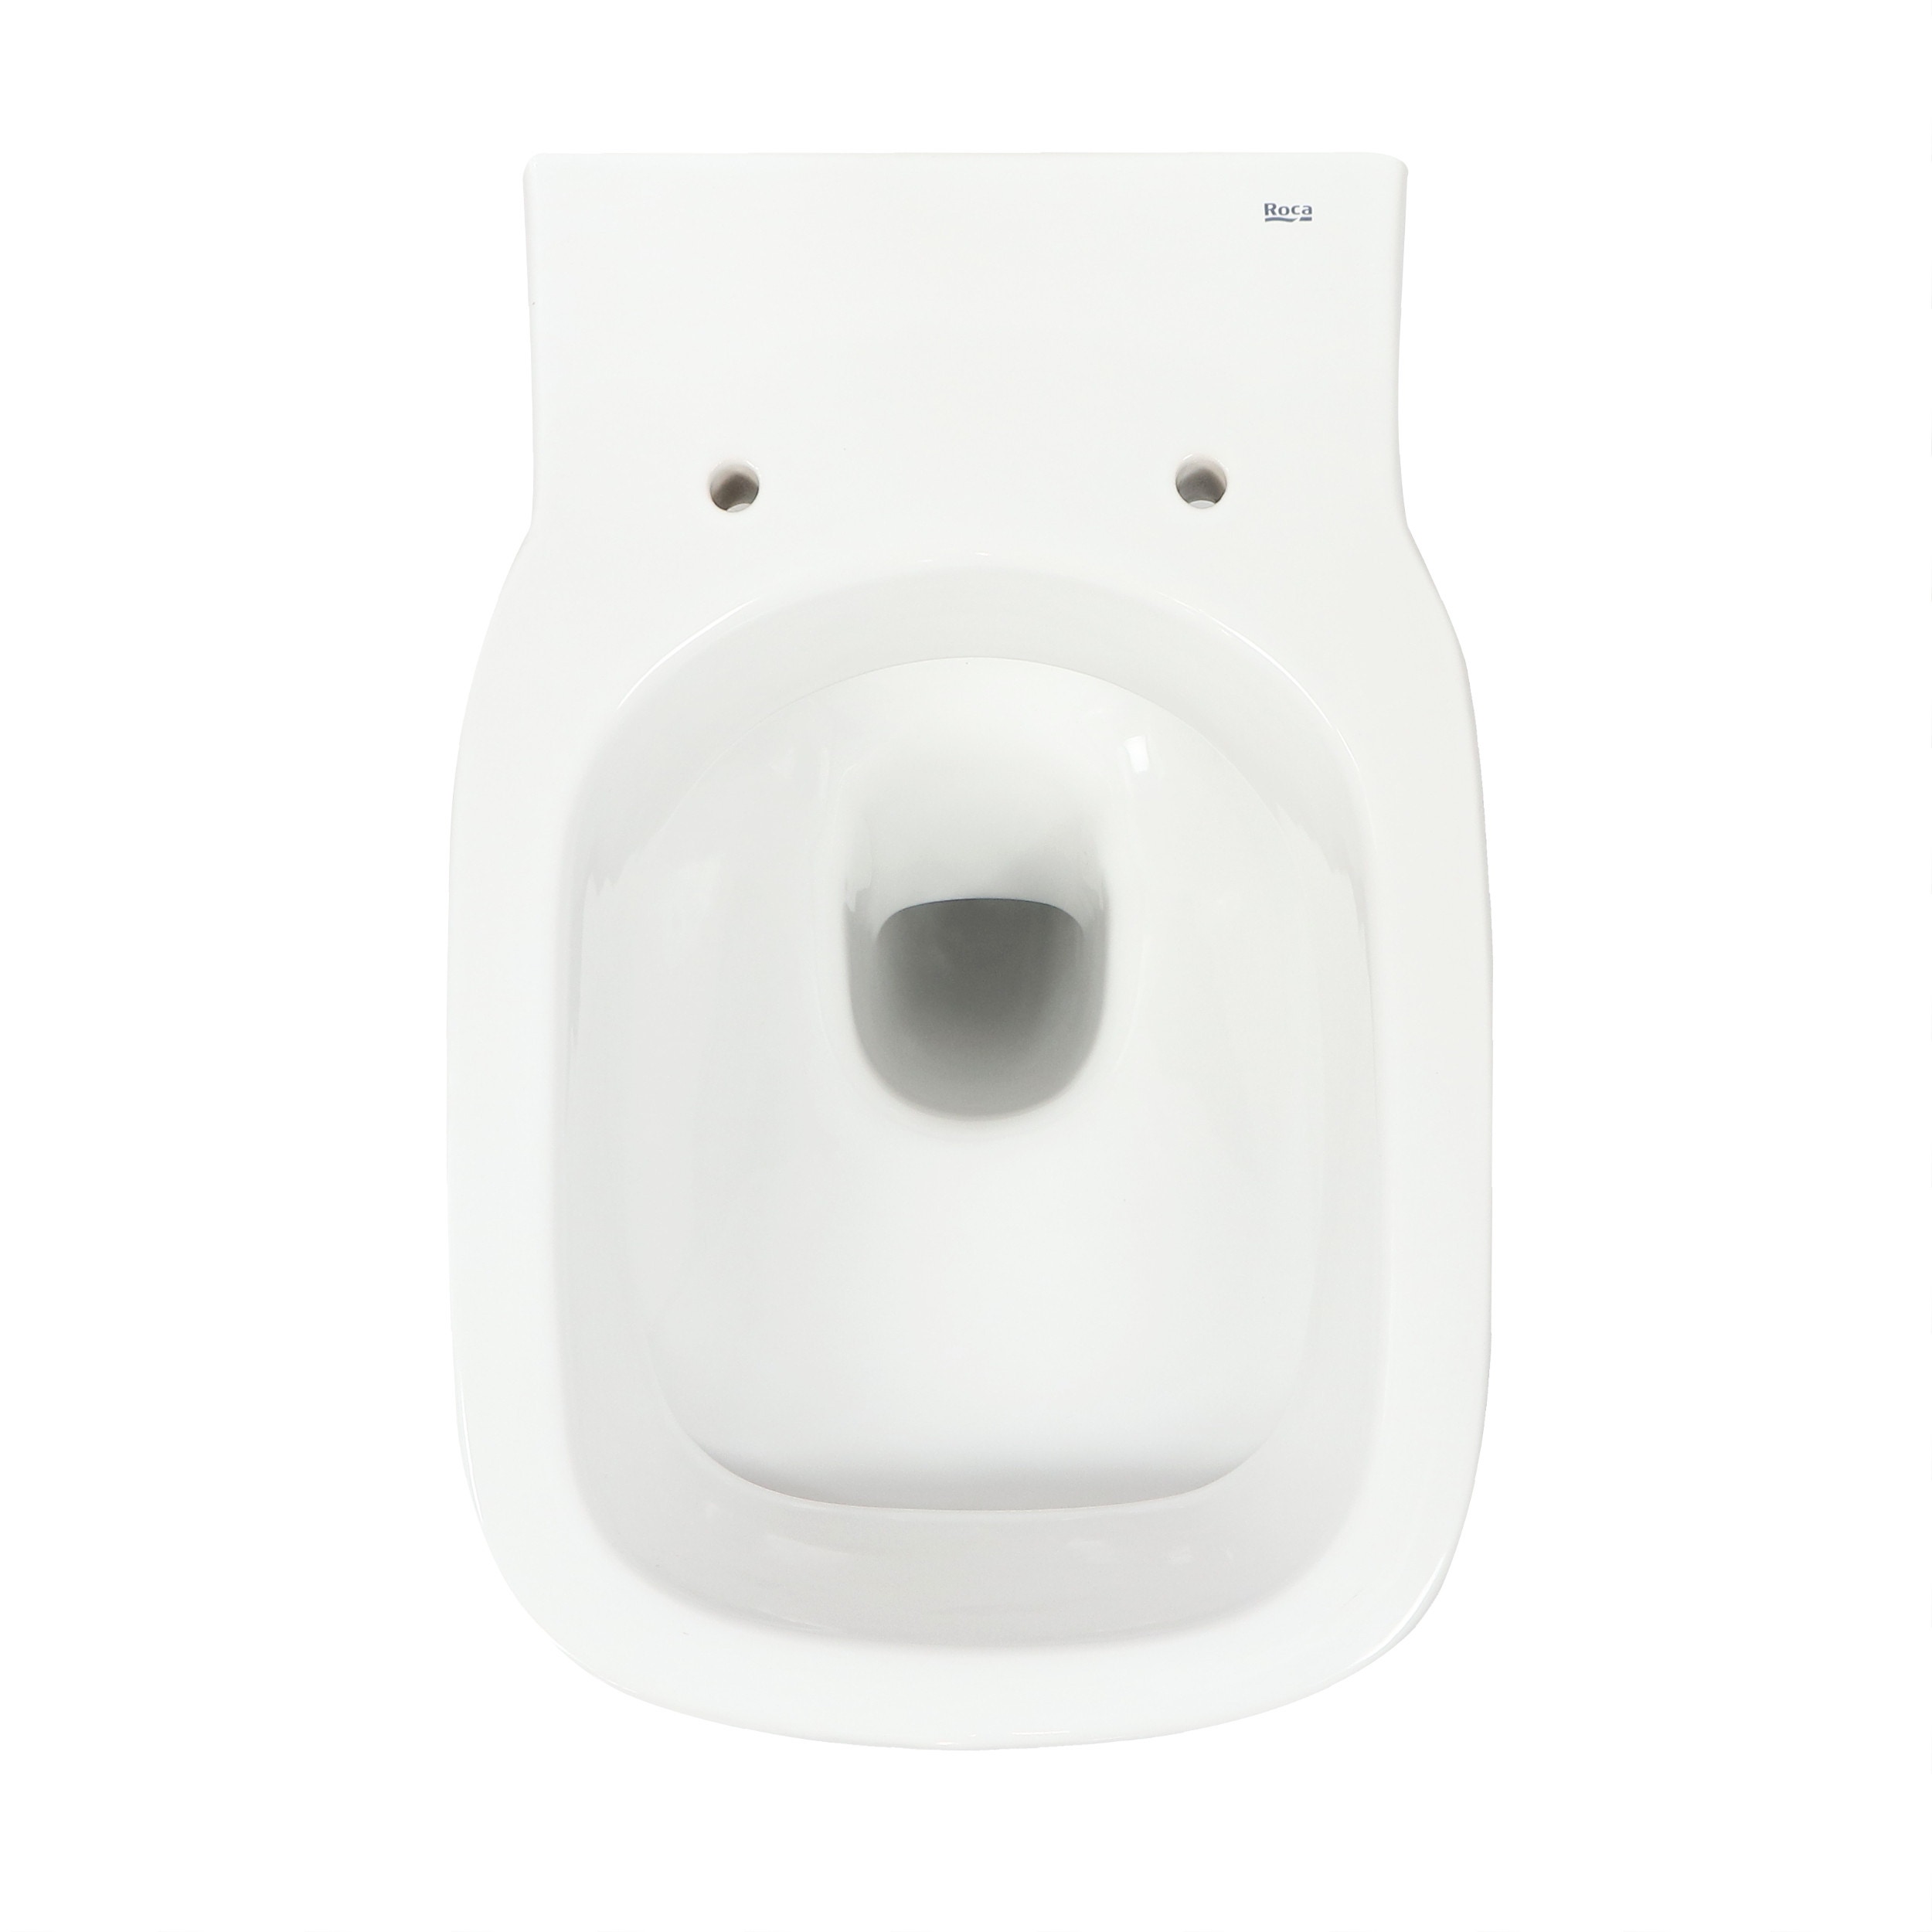 Vas WC suspendat Roca Debba A346997000, alb, cu evacuare orizontala